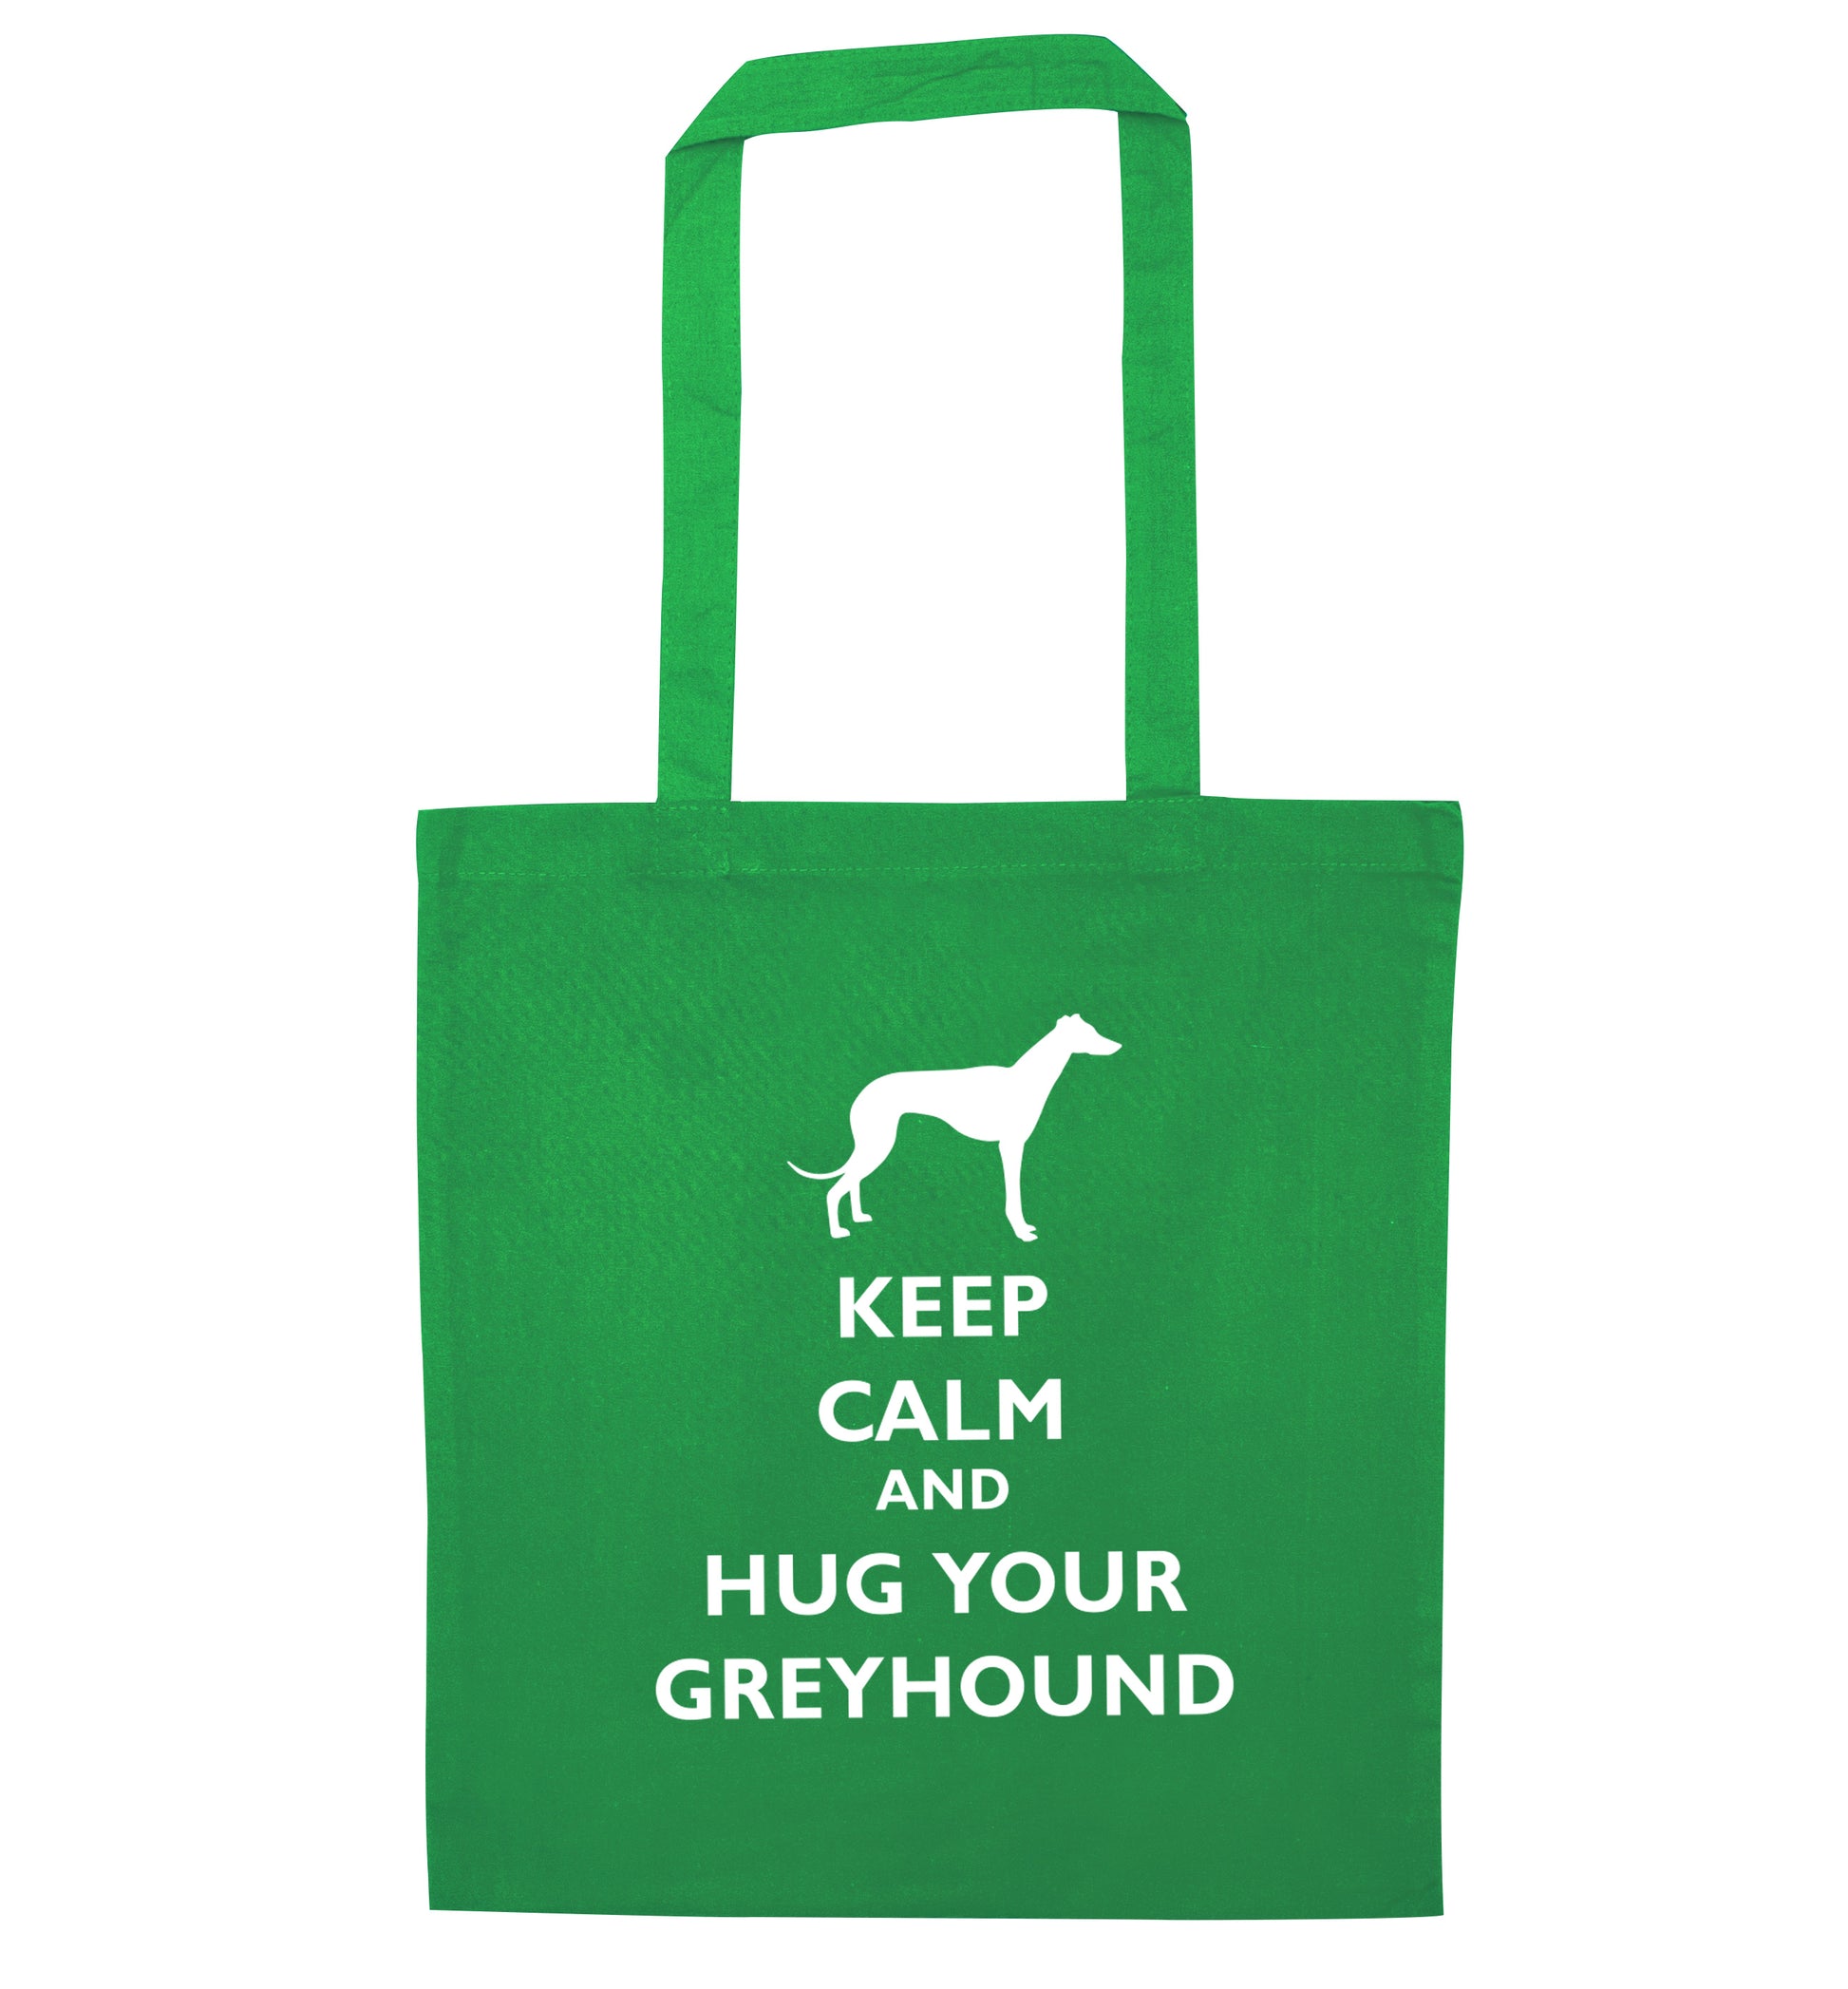 Keep calm and hug your greyhound green tote bag